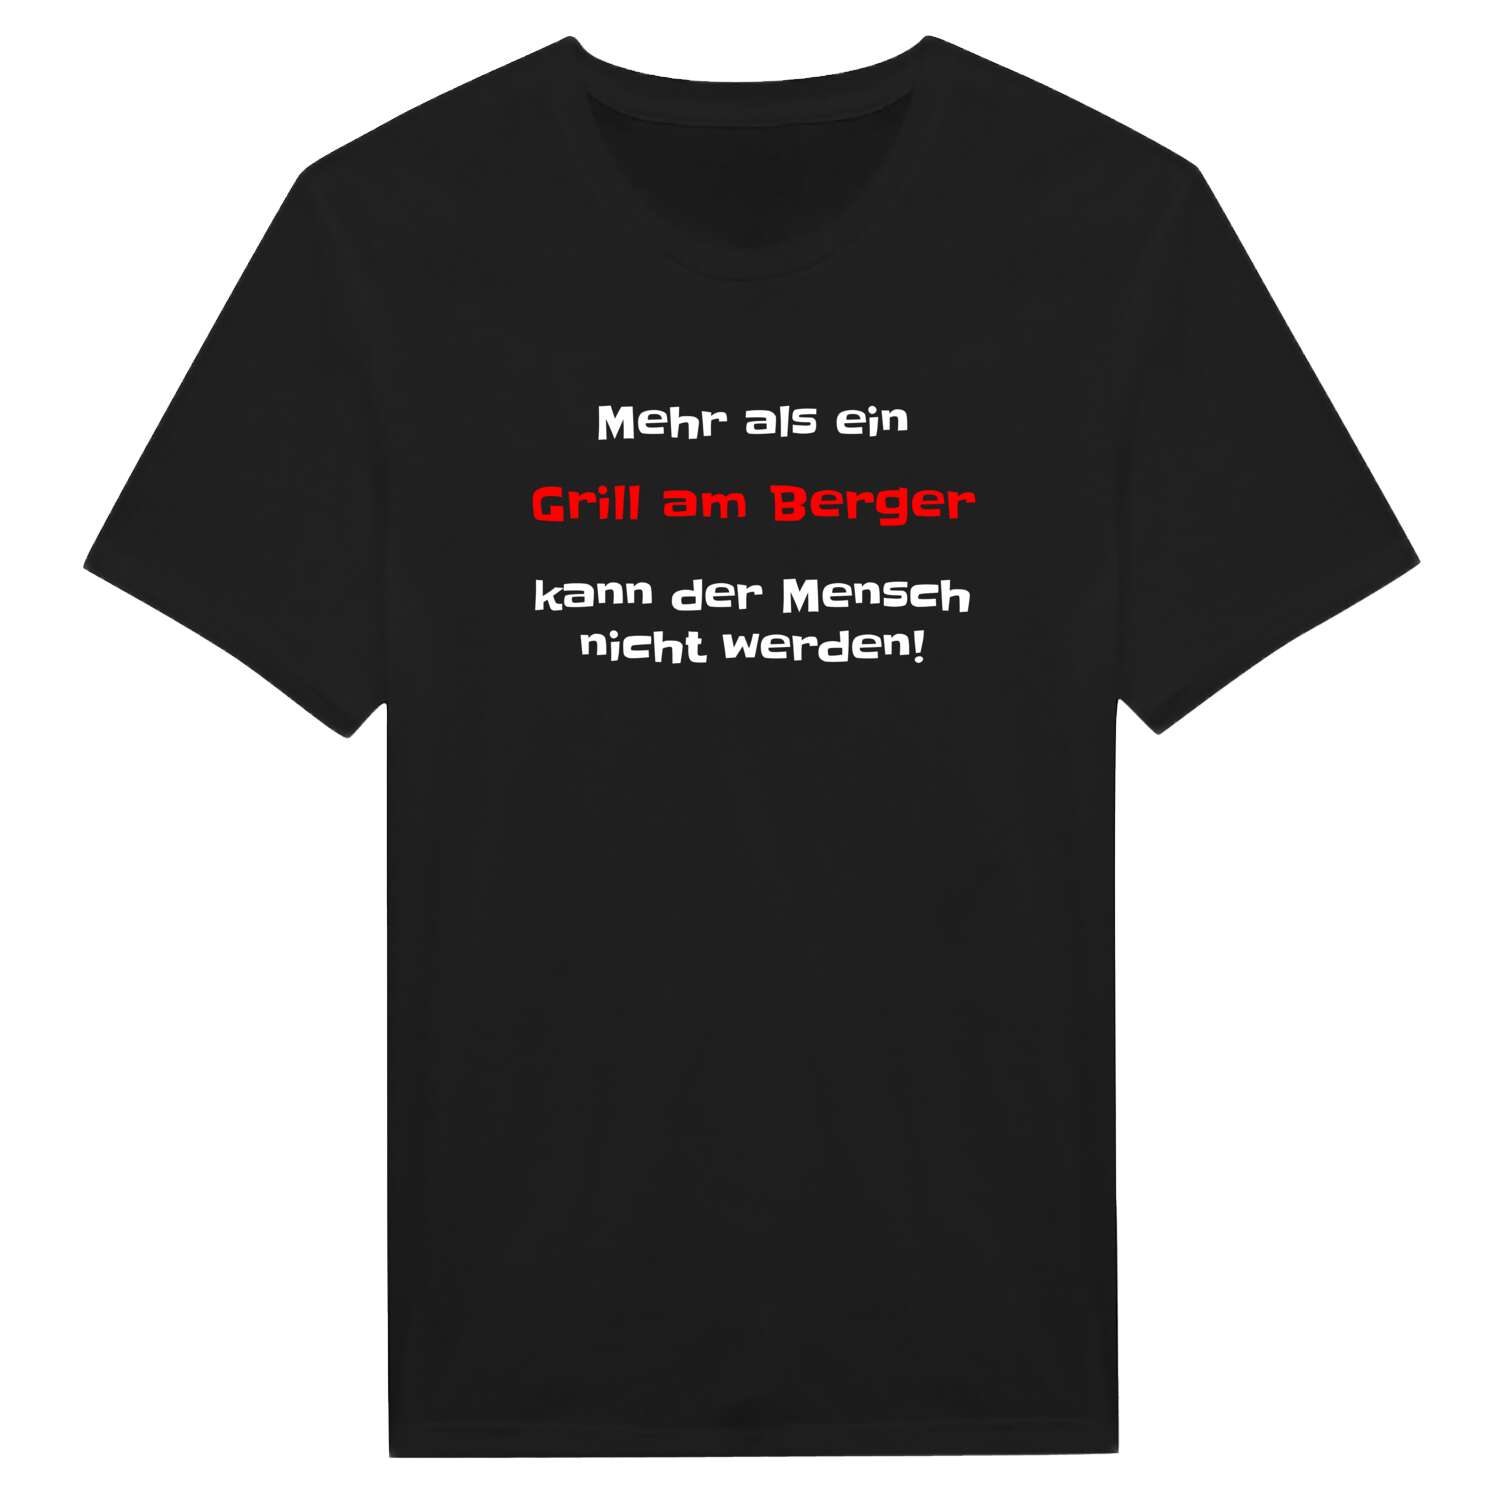 Grill am Berg T-Shirt »Mehr als ein«